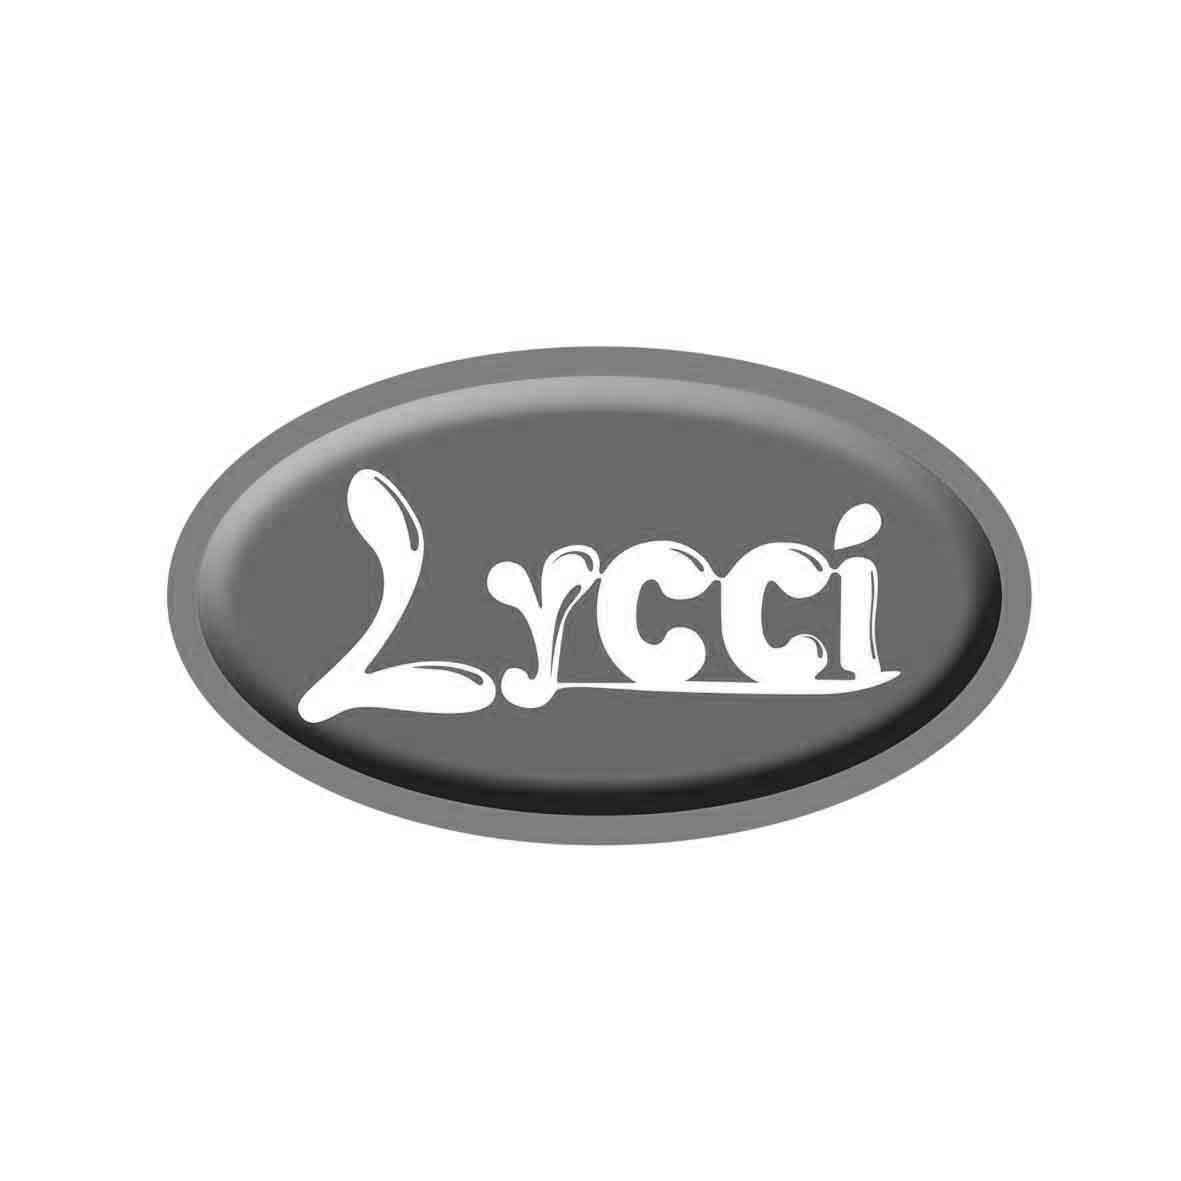 转让商标-LYCCI